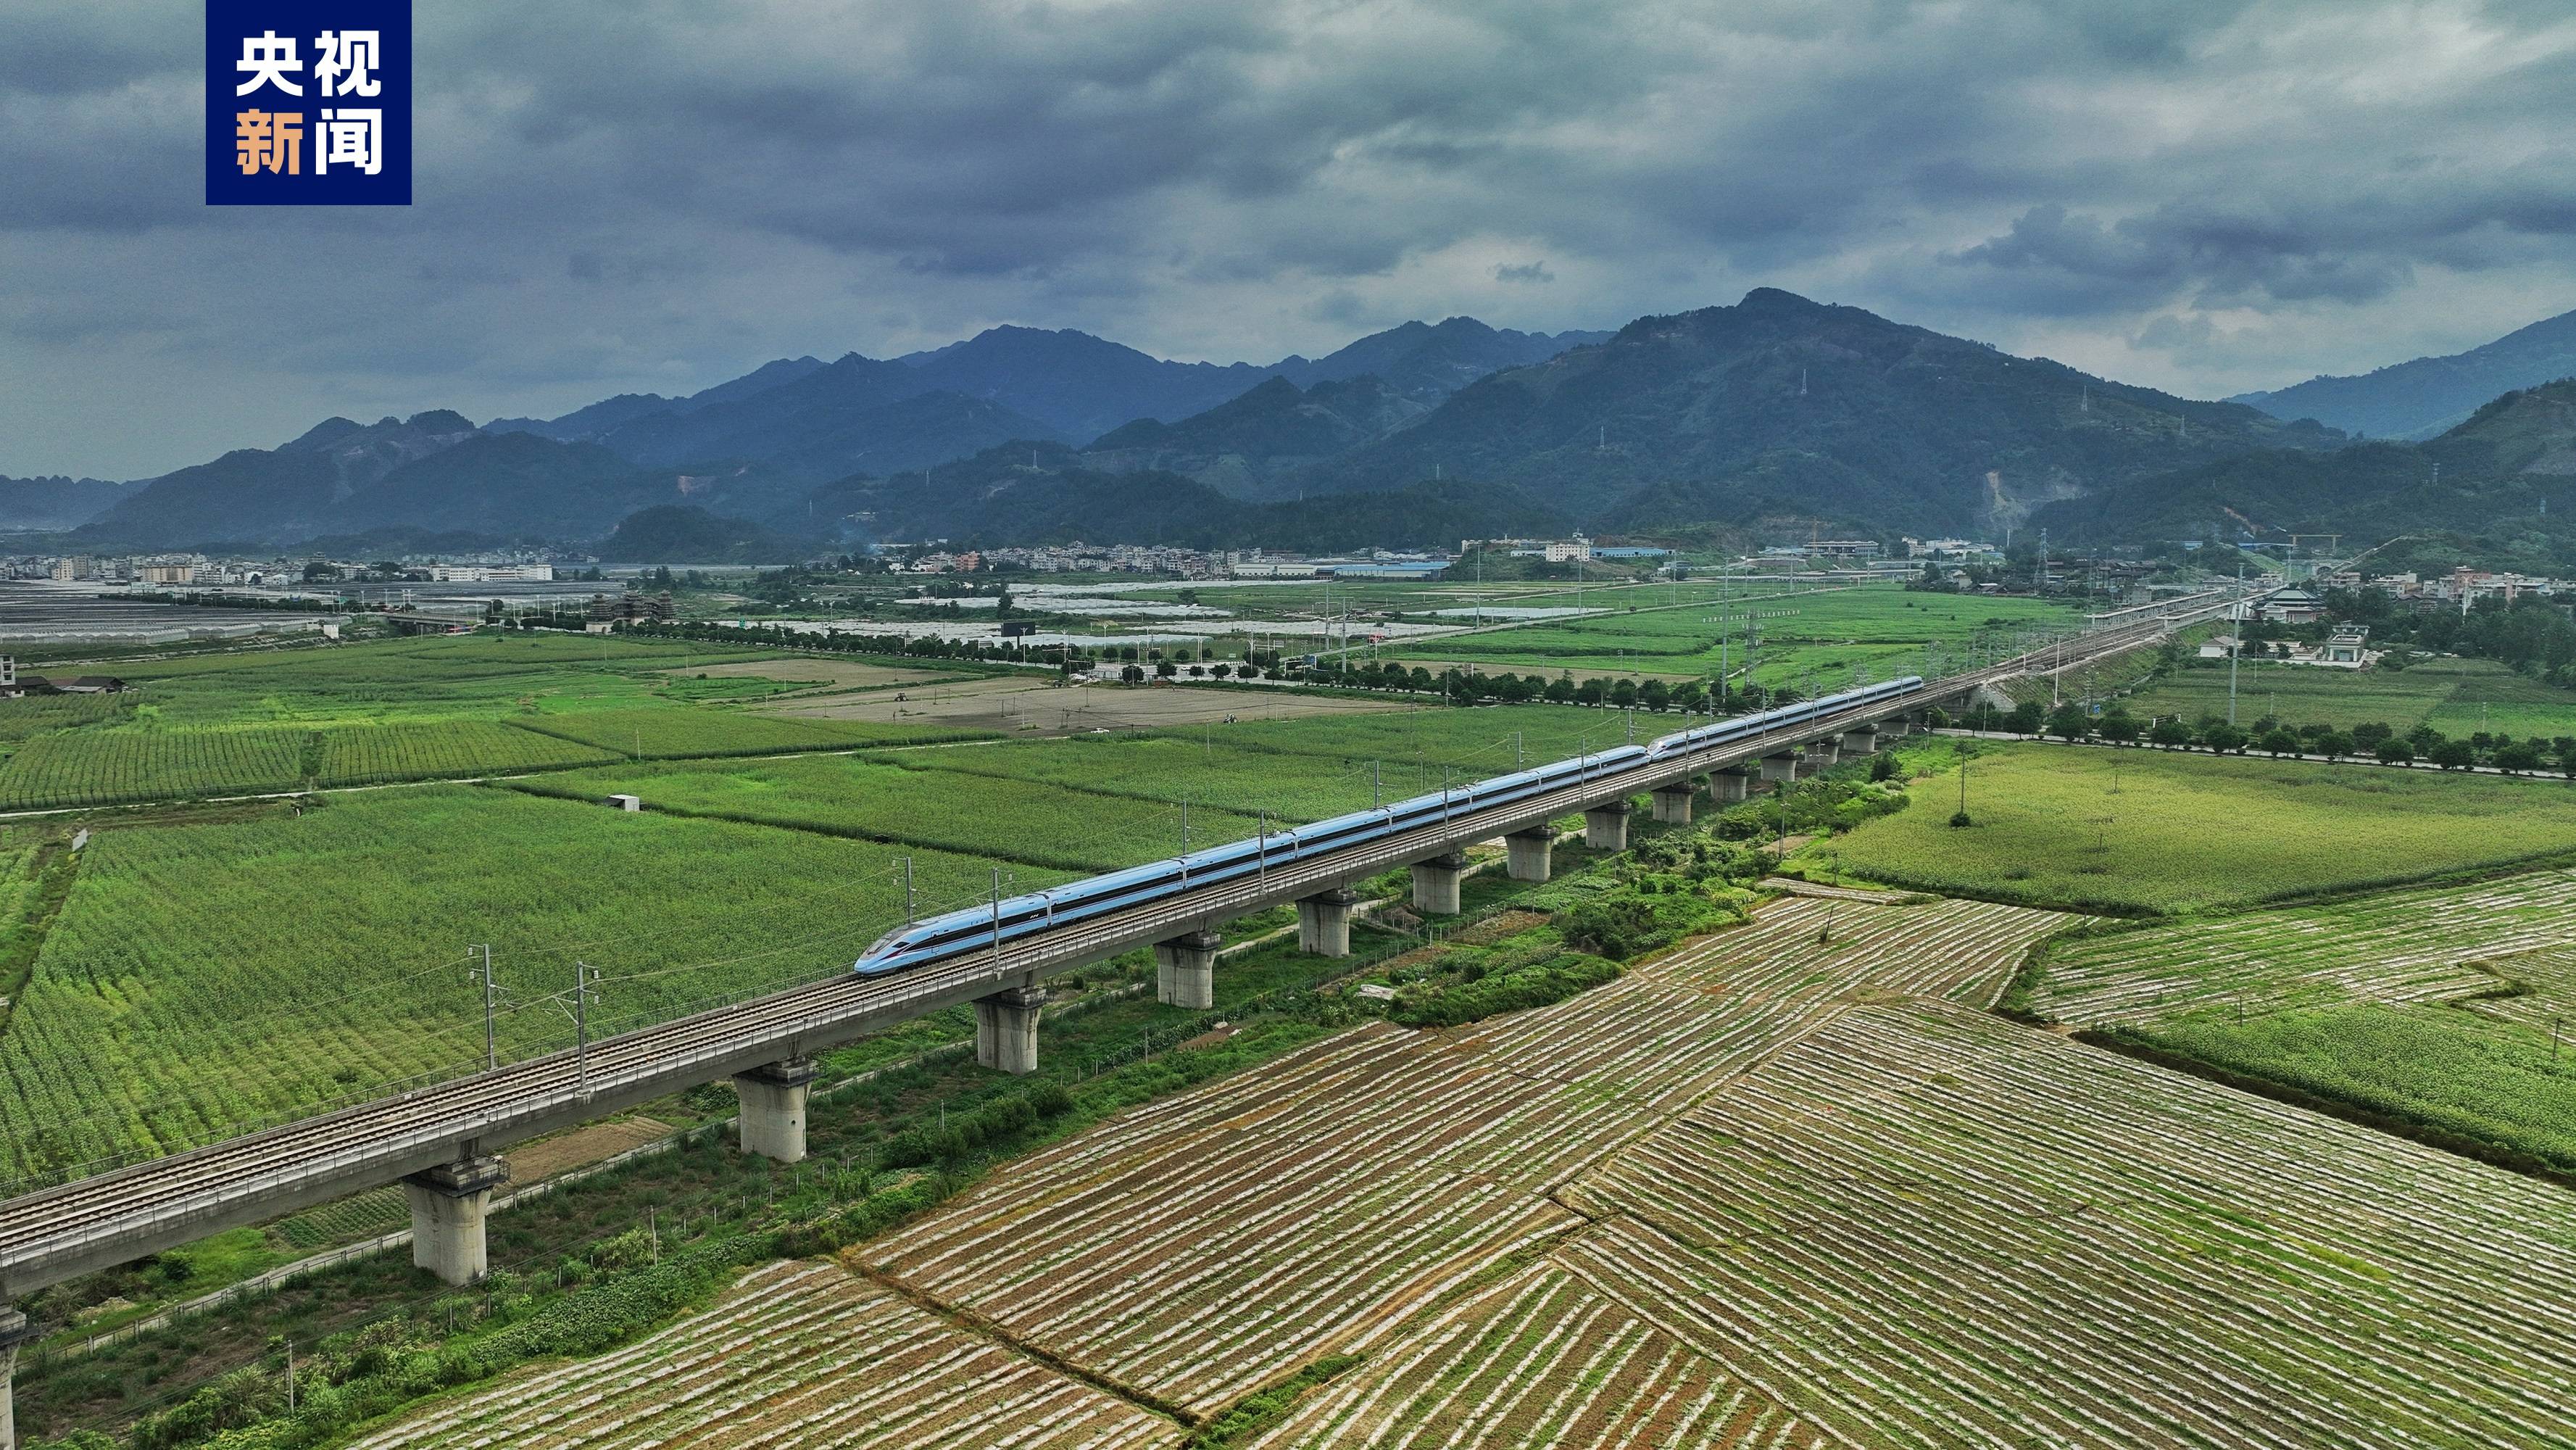 贵广高铁是连接我国西南,华南地区的高铁大通道,也是八纵八横高速